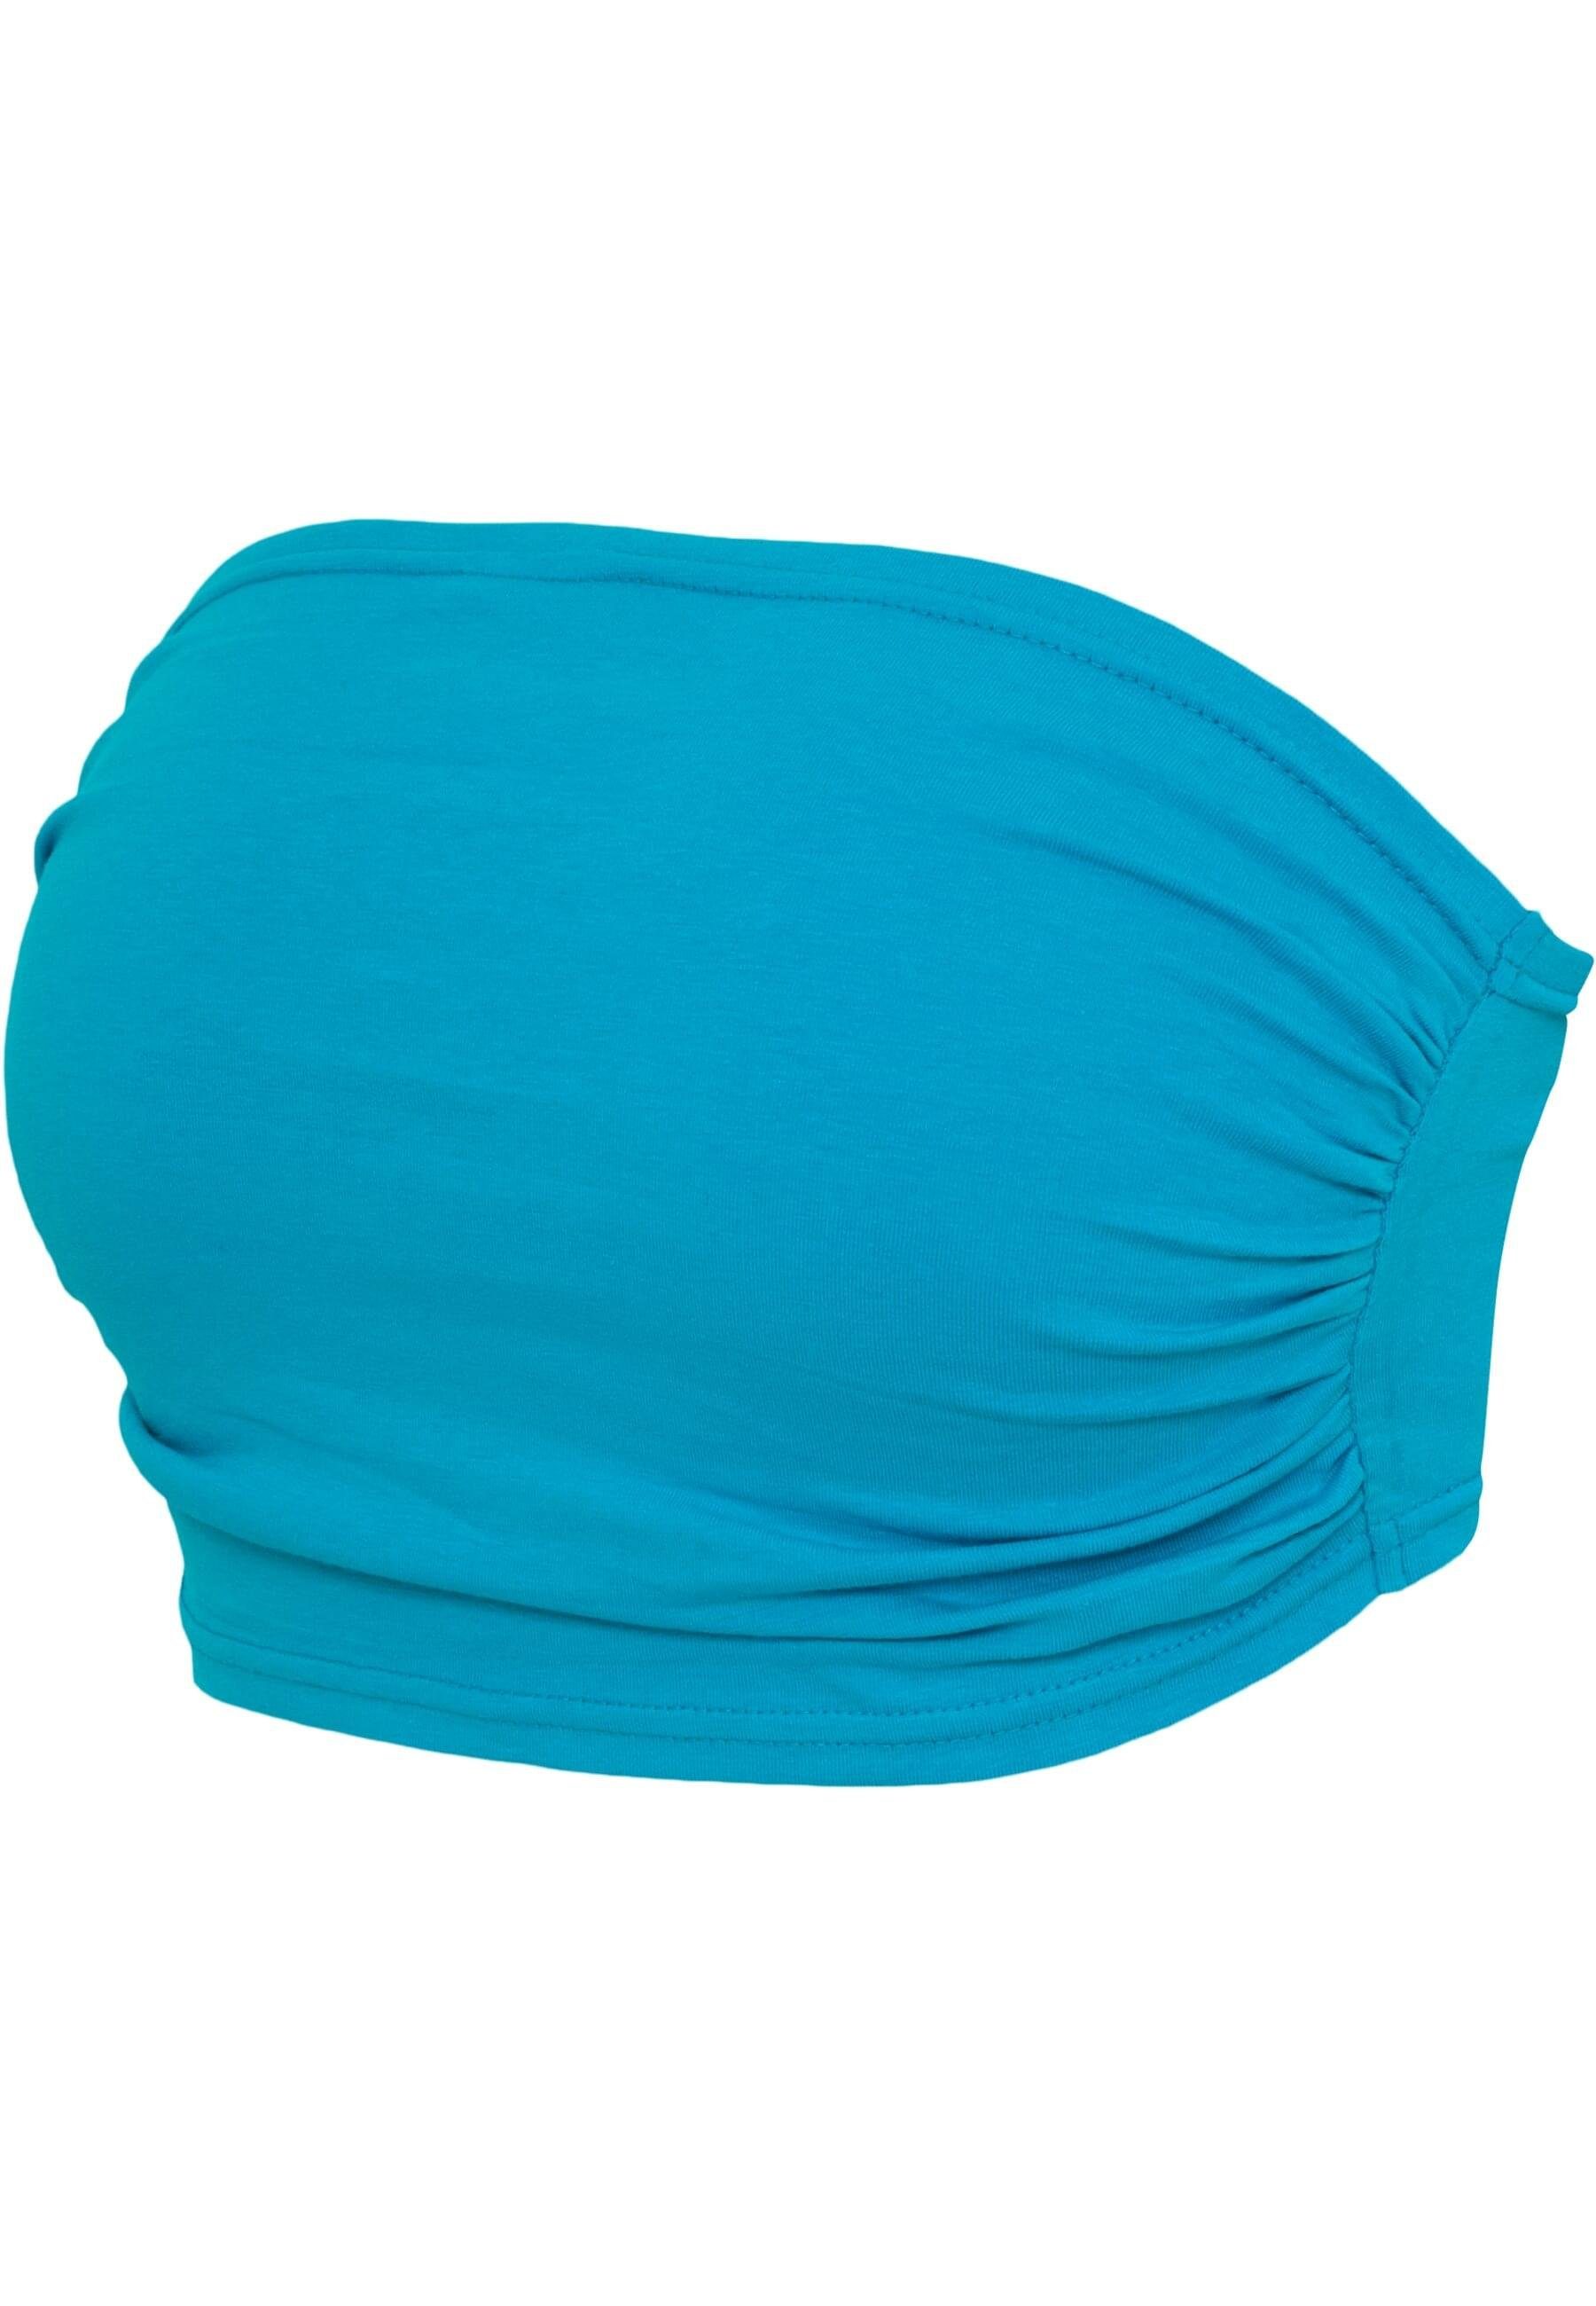 URBAN CLASSICS Bügelloser BH 3-Pack Ladies Damen Top Bandeau turquoise+turquoise+turquoise